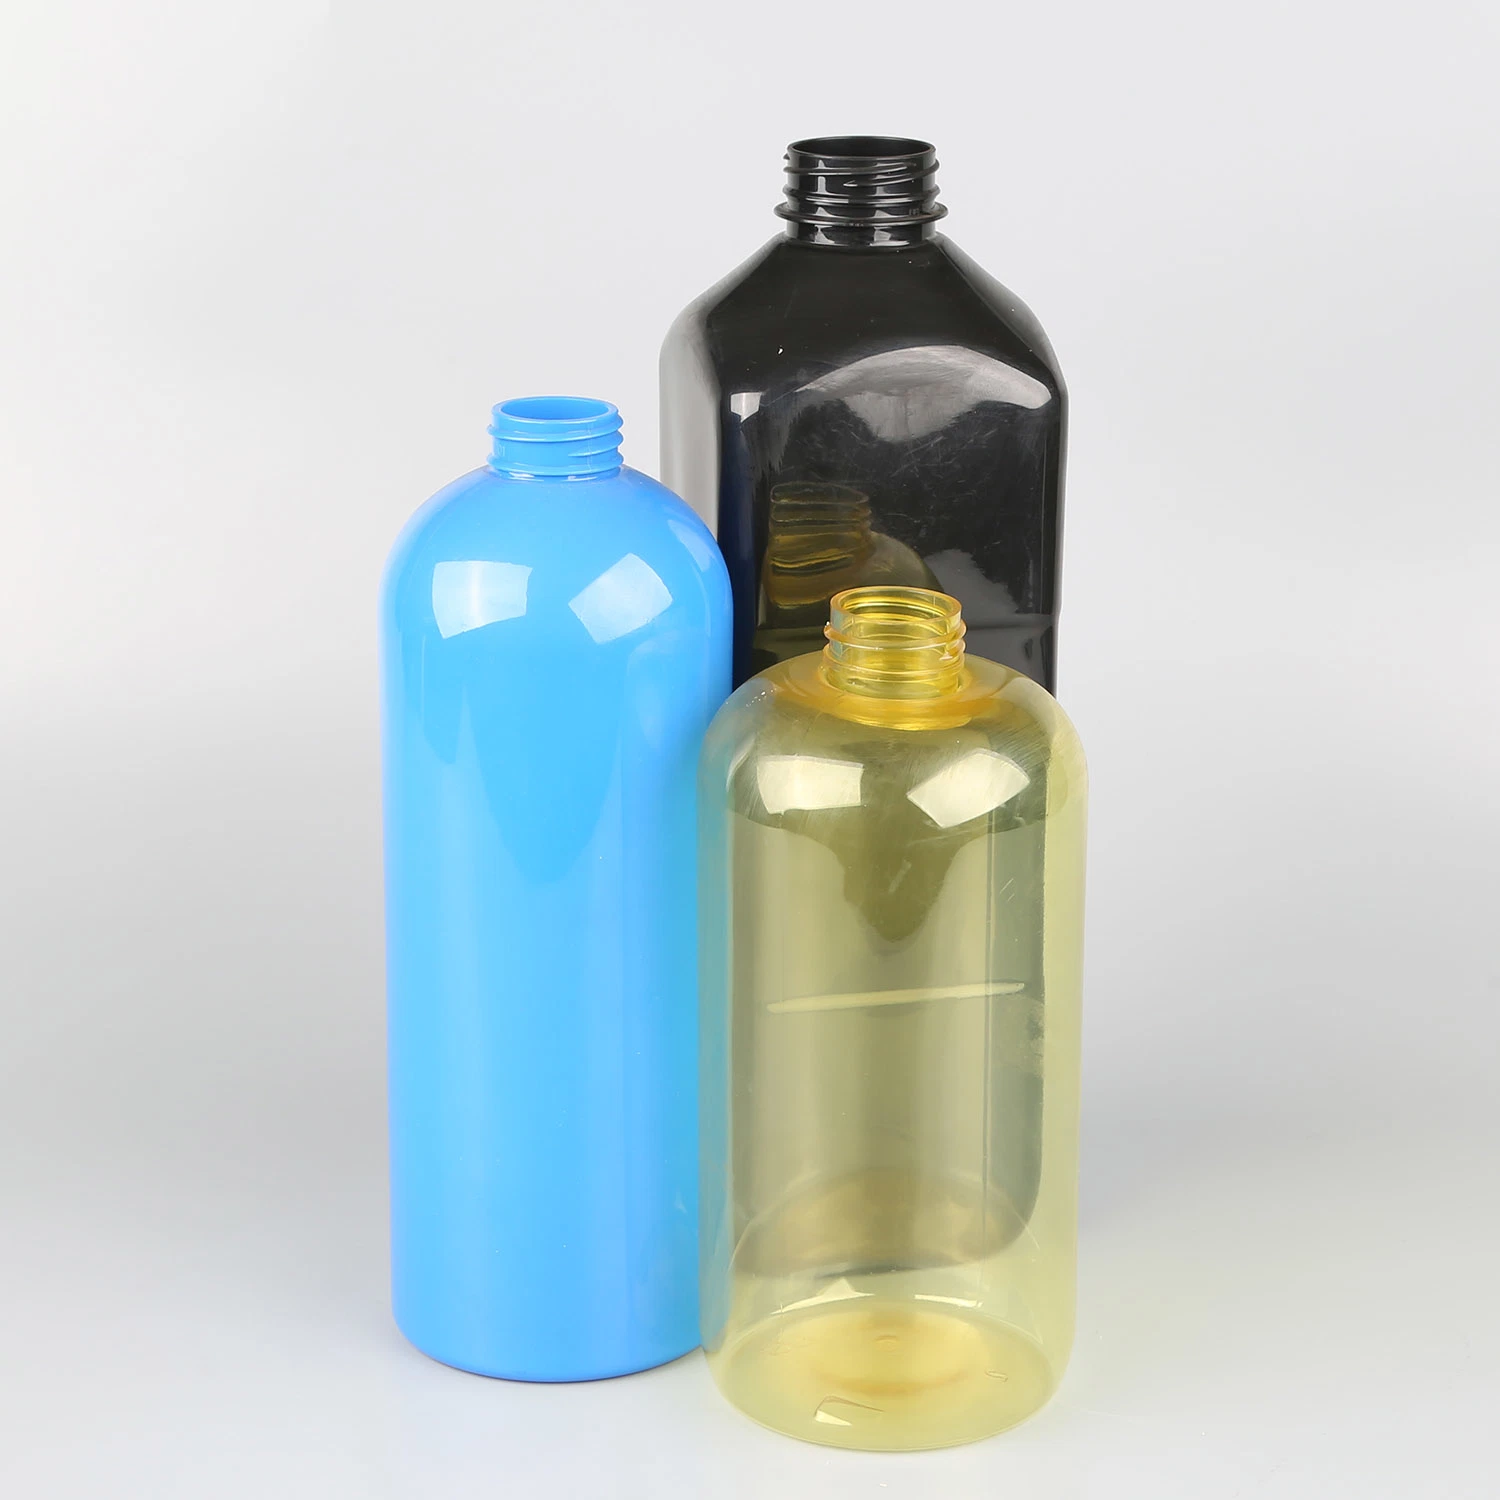 Tous les jours de haute qualité des produits chimiques personnalisé/couleur blanc pur des bouteilles en PET